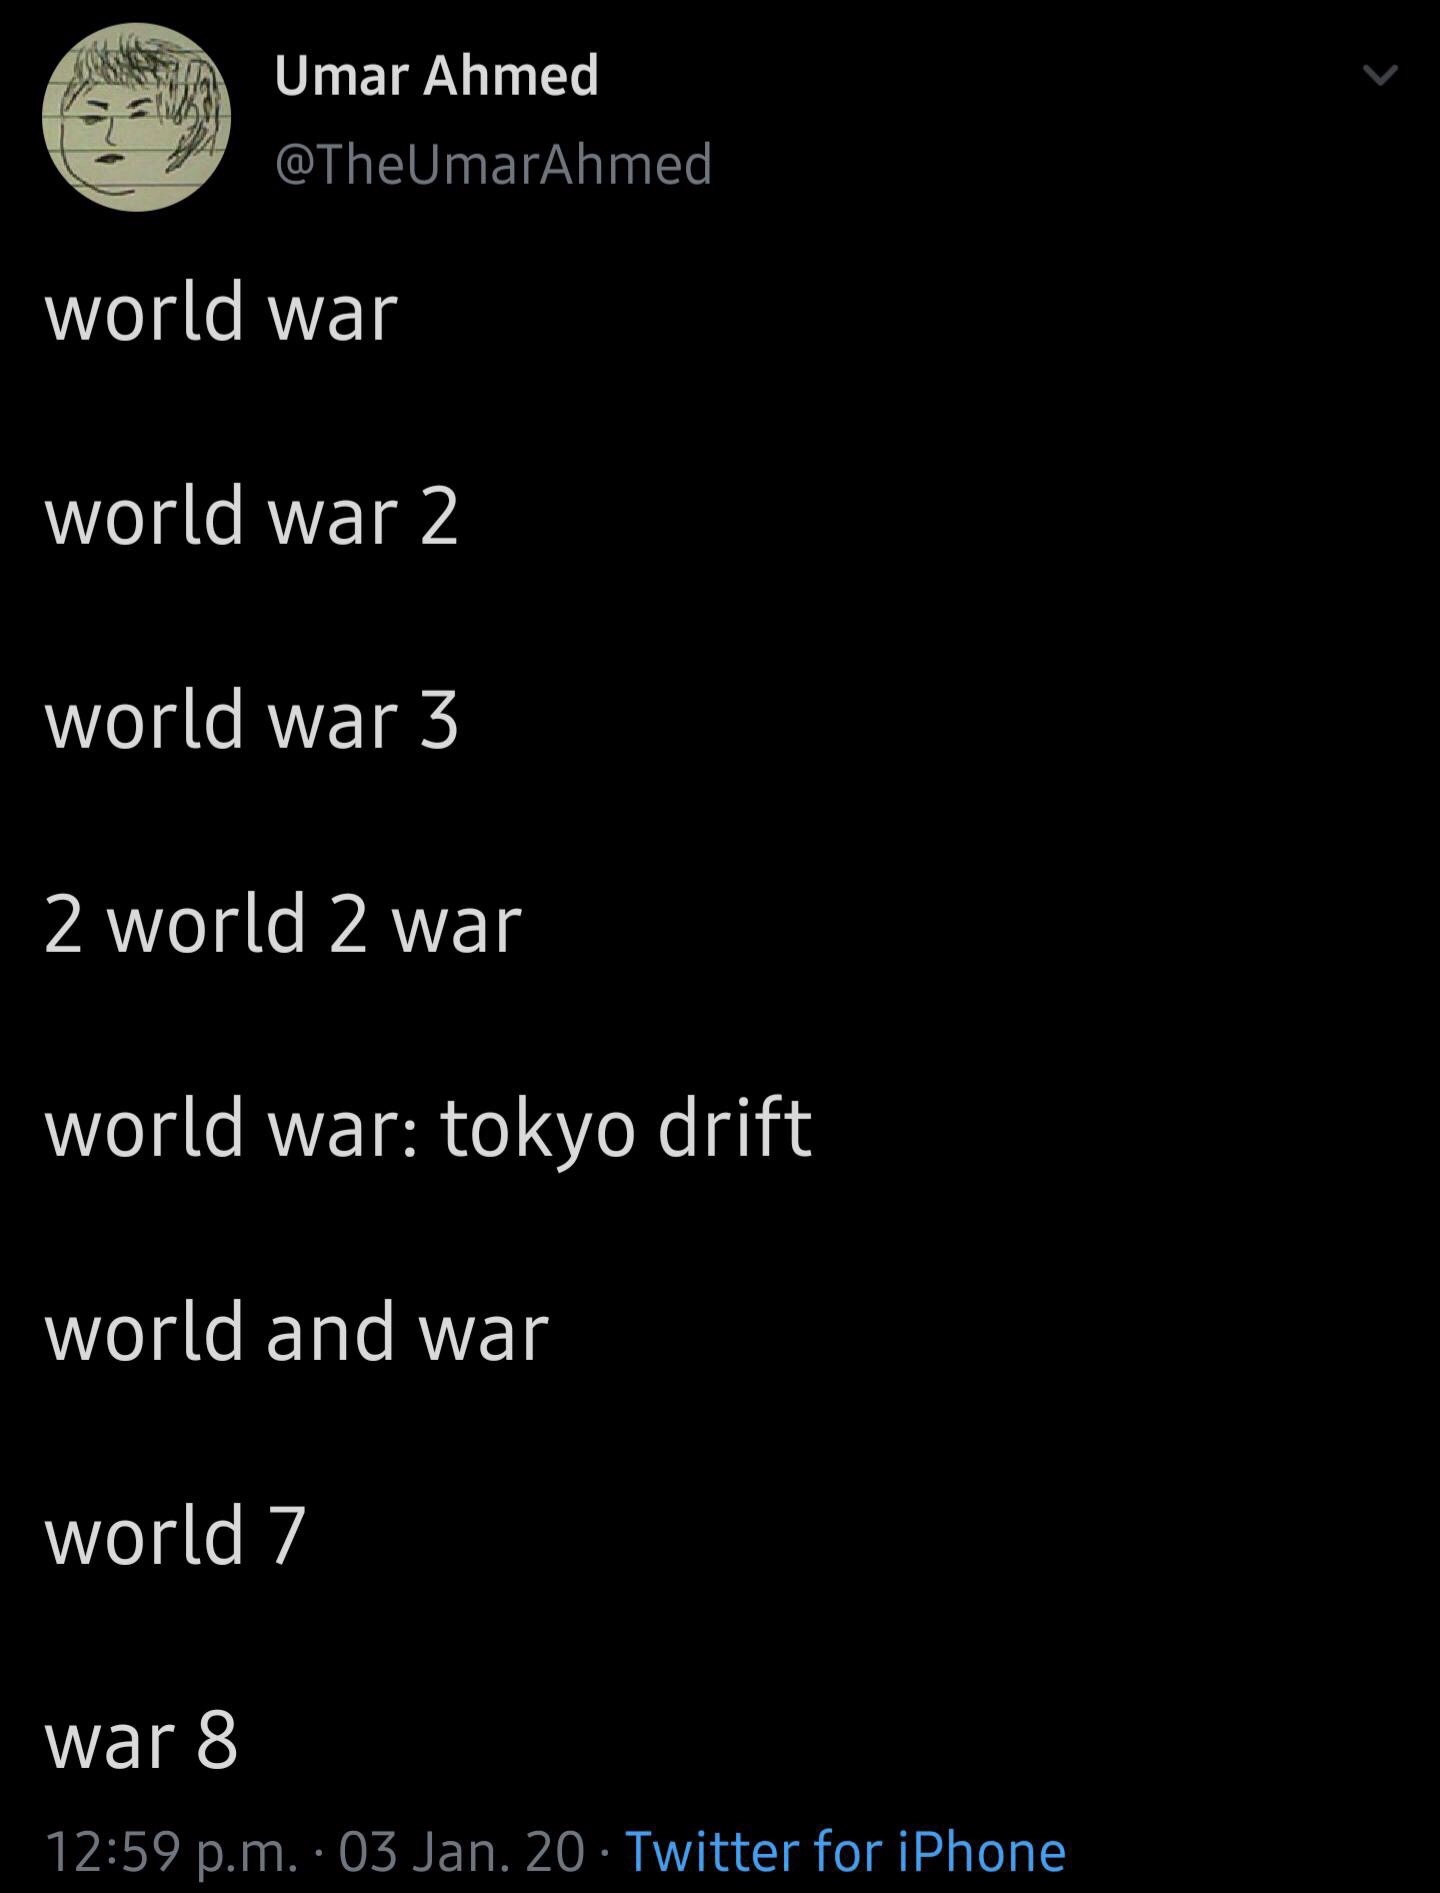 atmosphere - Umar Ahmed world war world war 2 world war 3 2 world 2 war world war tokyo drift world and war world 7 war 8 p.m. 03 Jan. 20 Twitter for iPhone